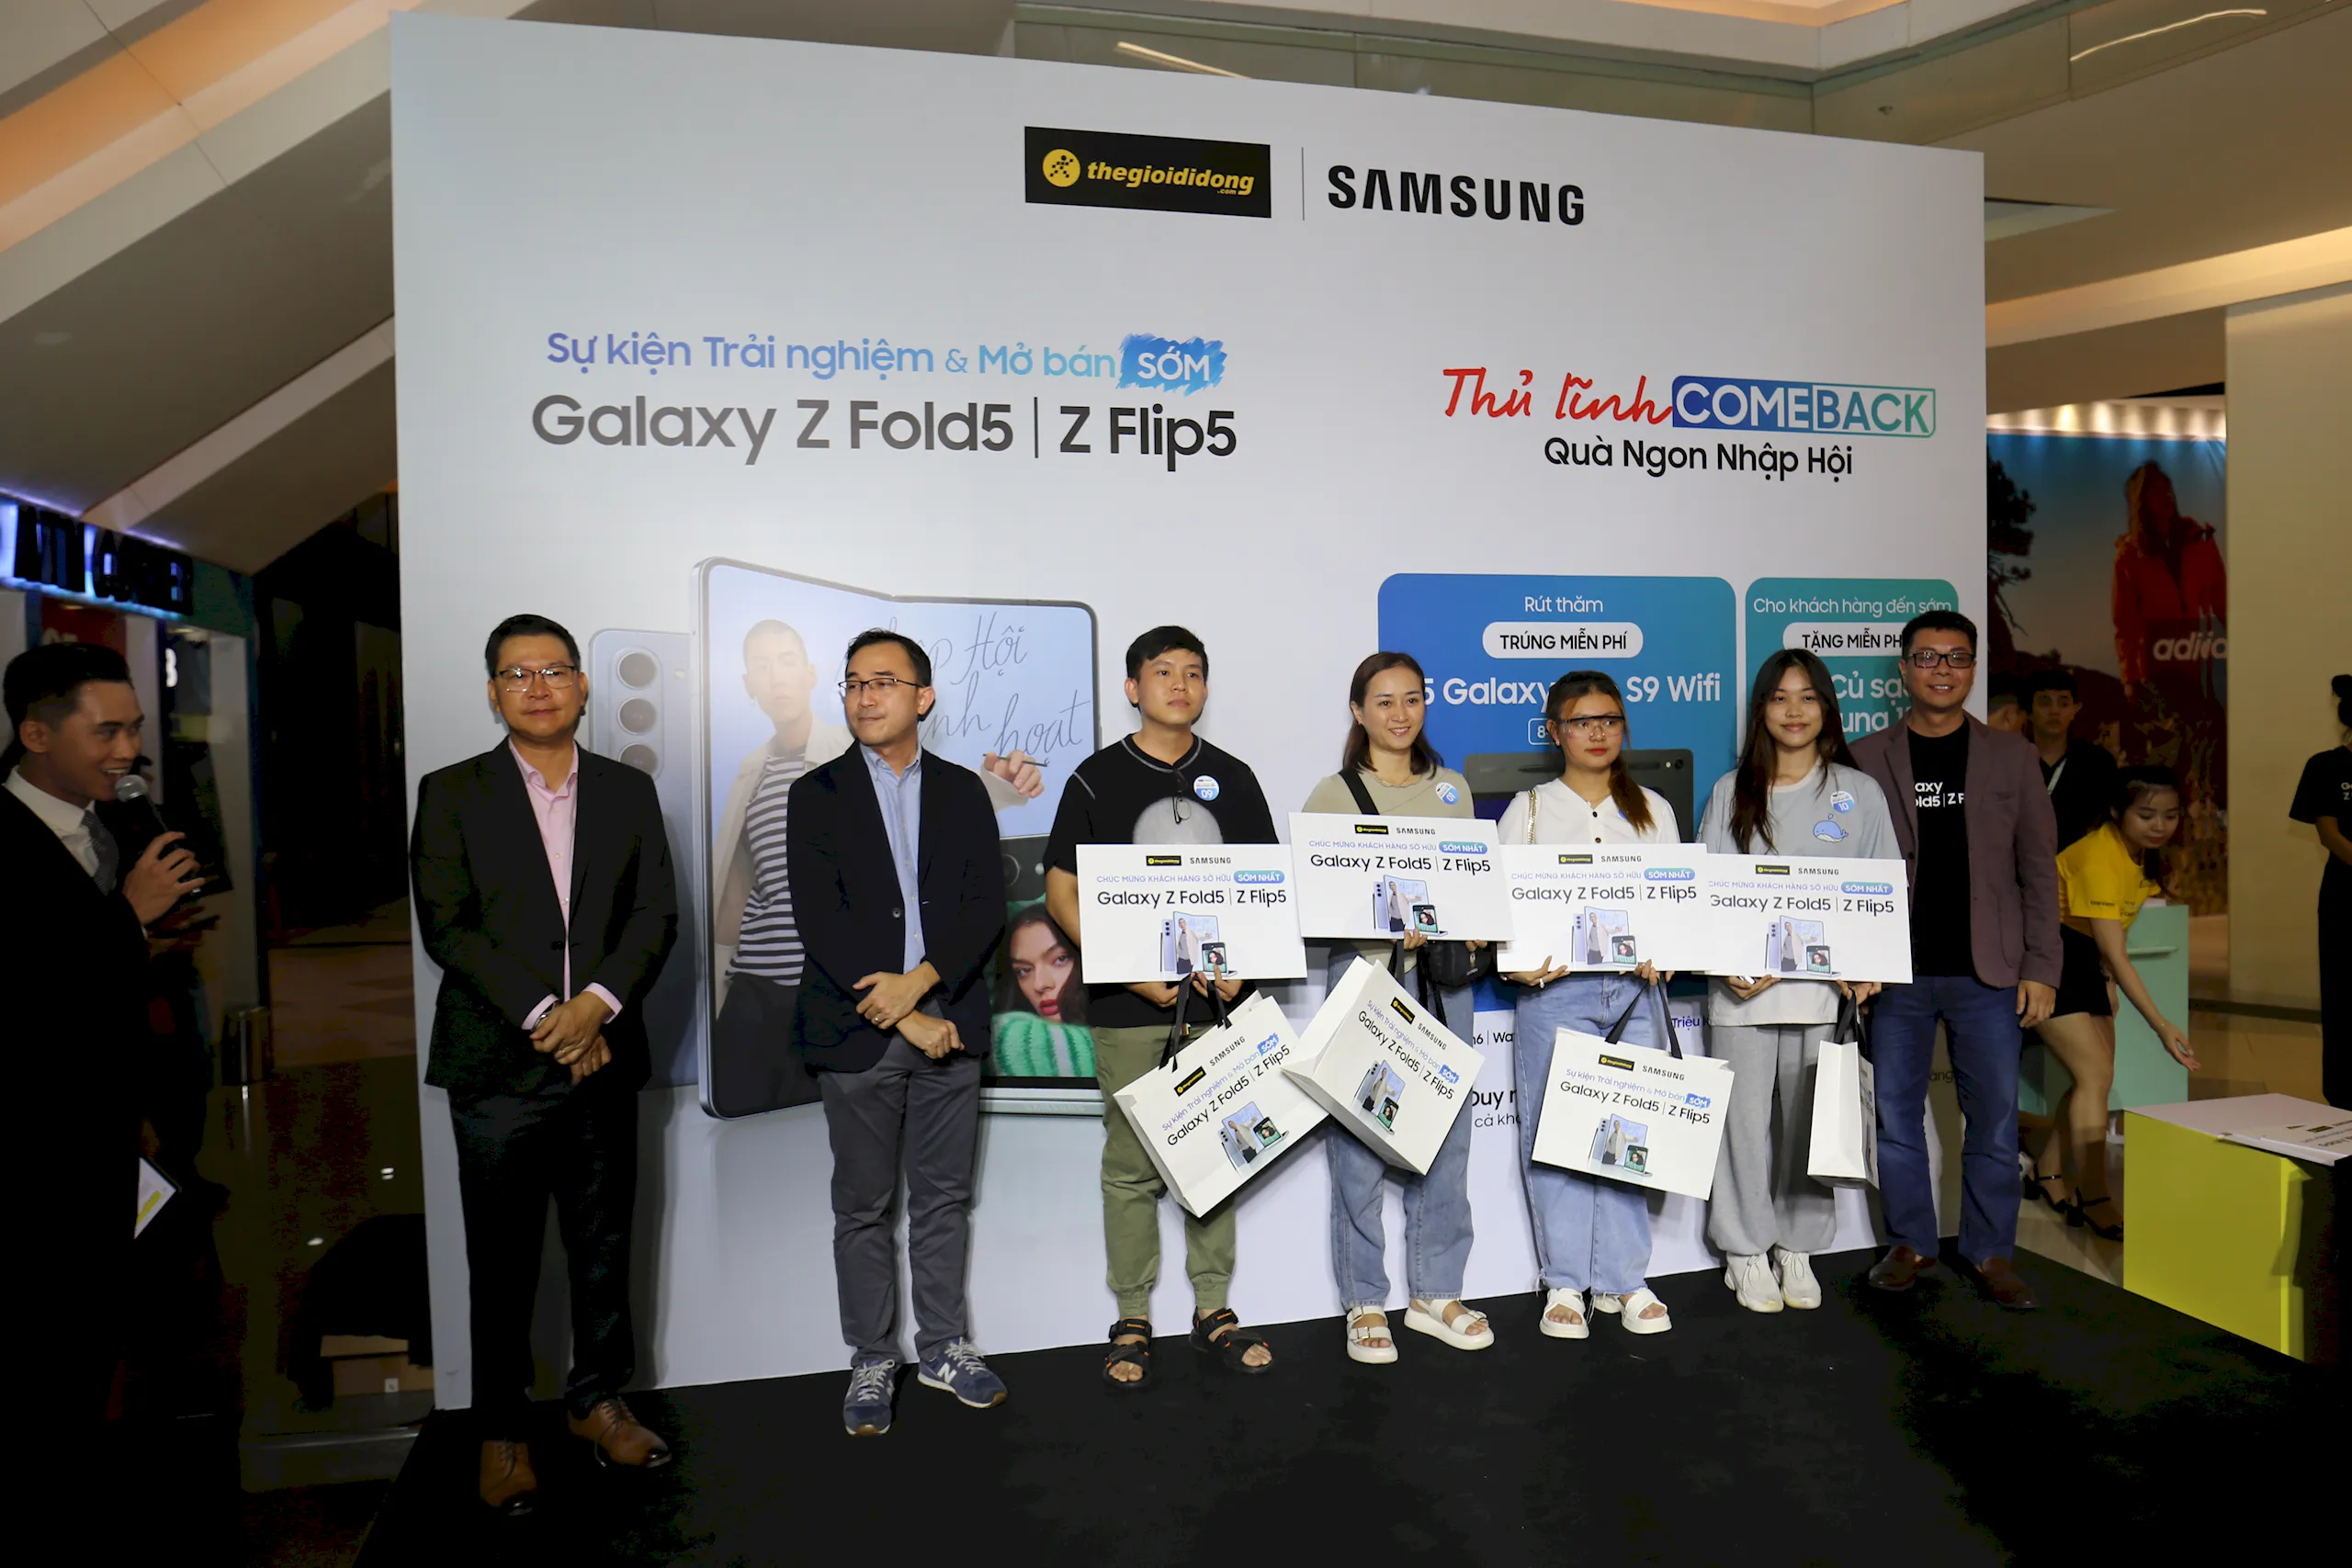 Thế Giới Di Động đồng loạt mở bán sớm bộ đôi Samsung Galaxy Z Fold5 /Z Flip5 tại 14 địa điểm trên toàn quốc